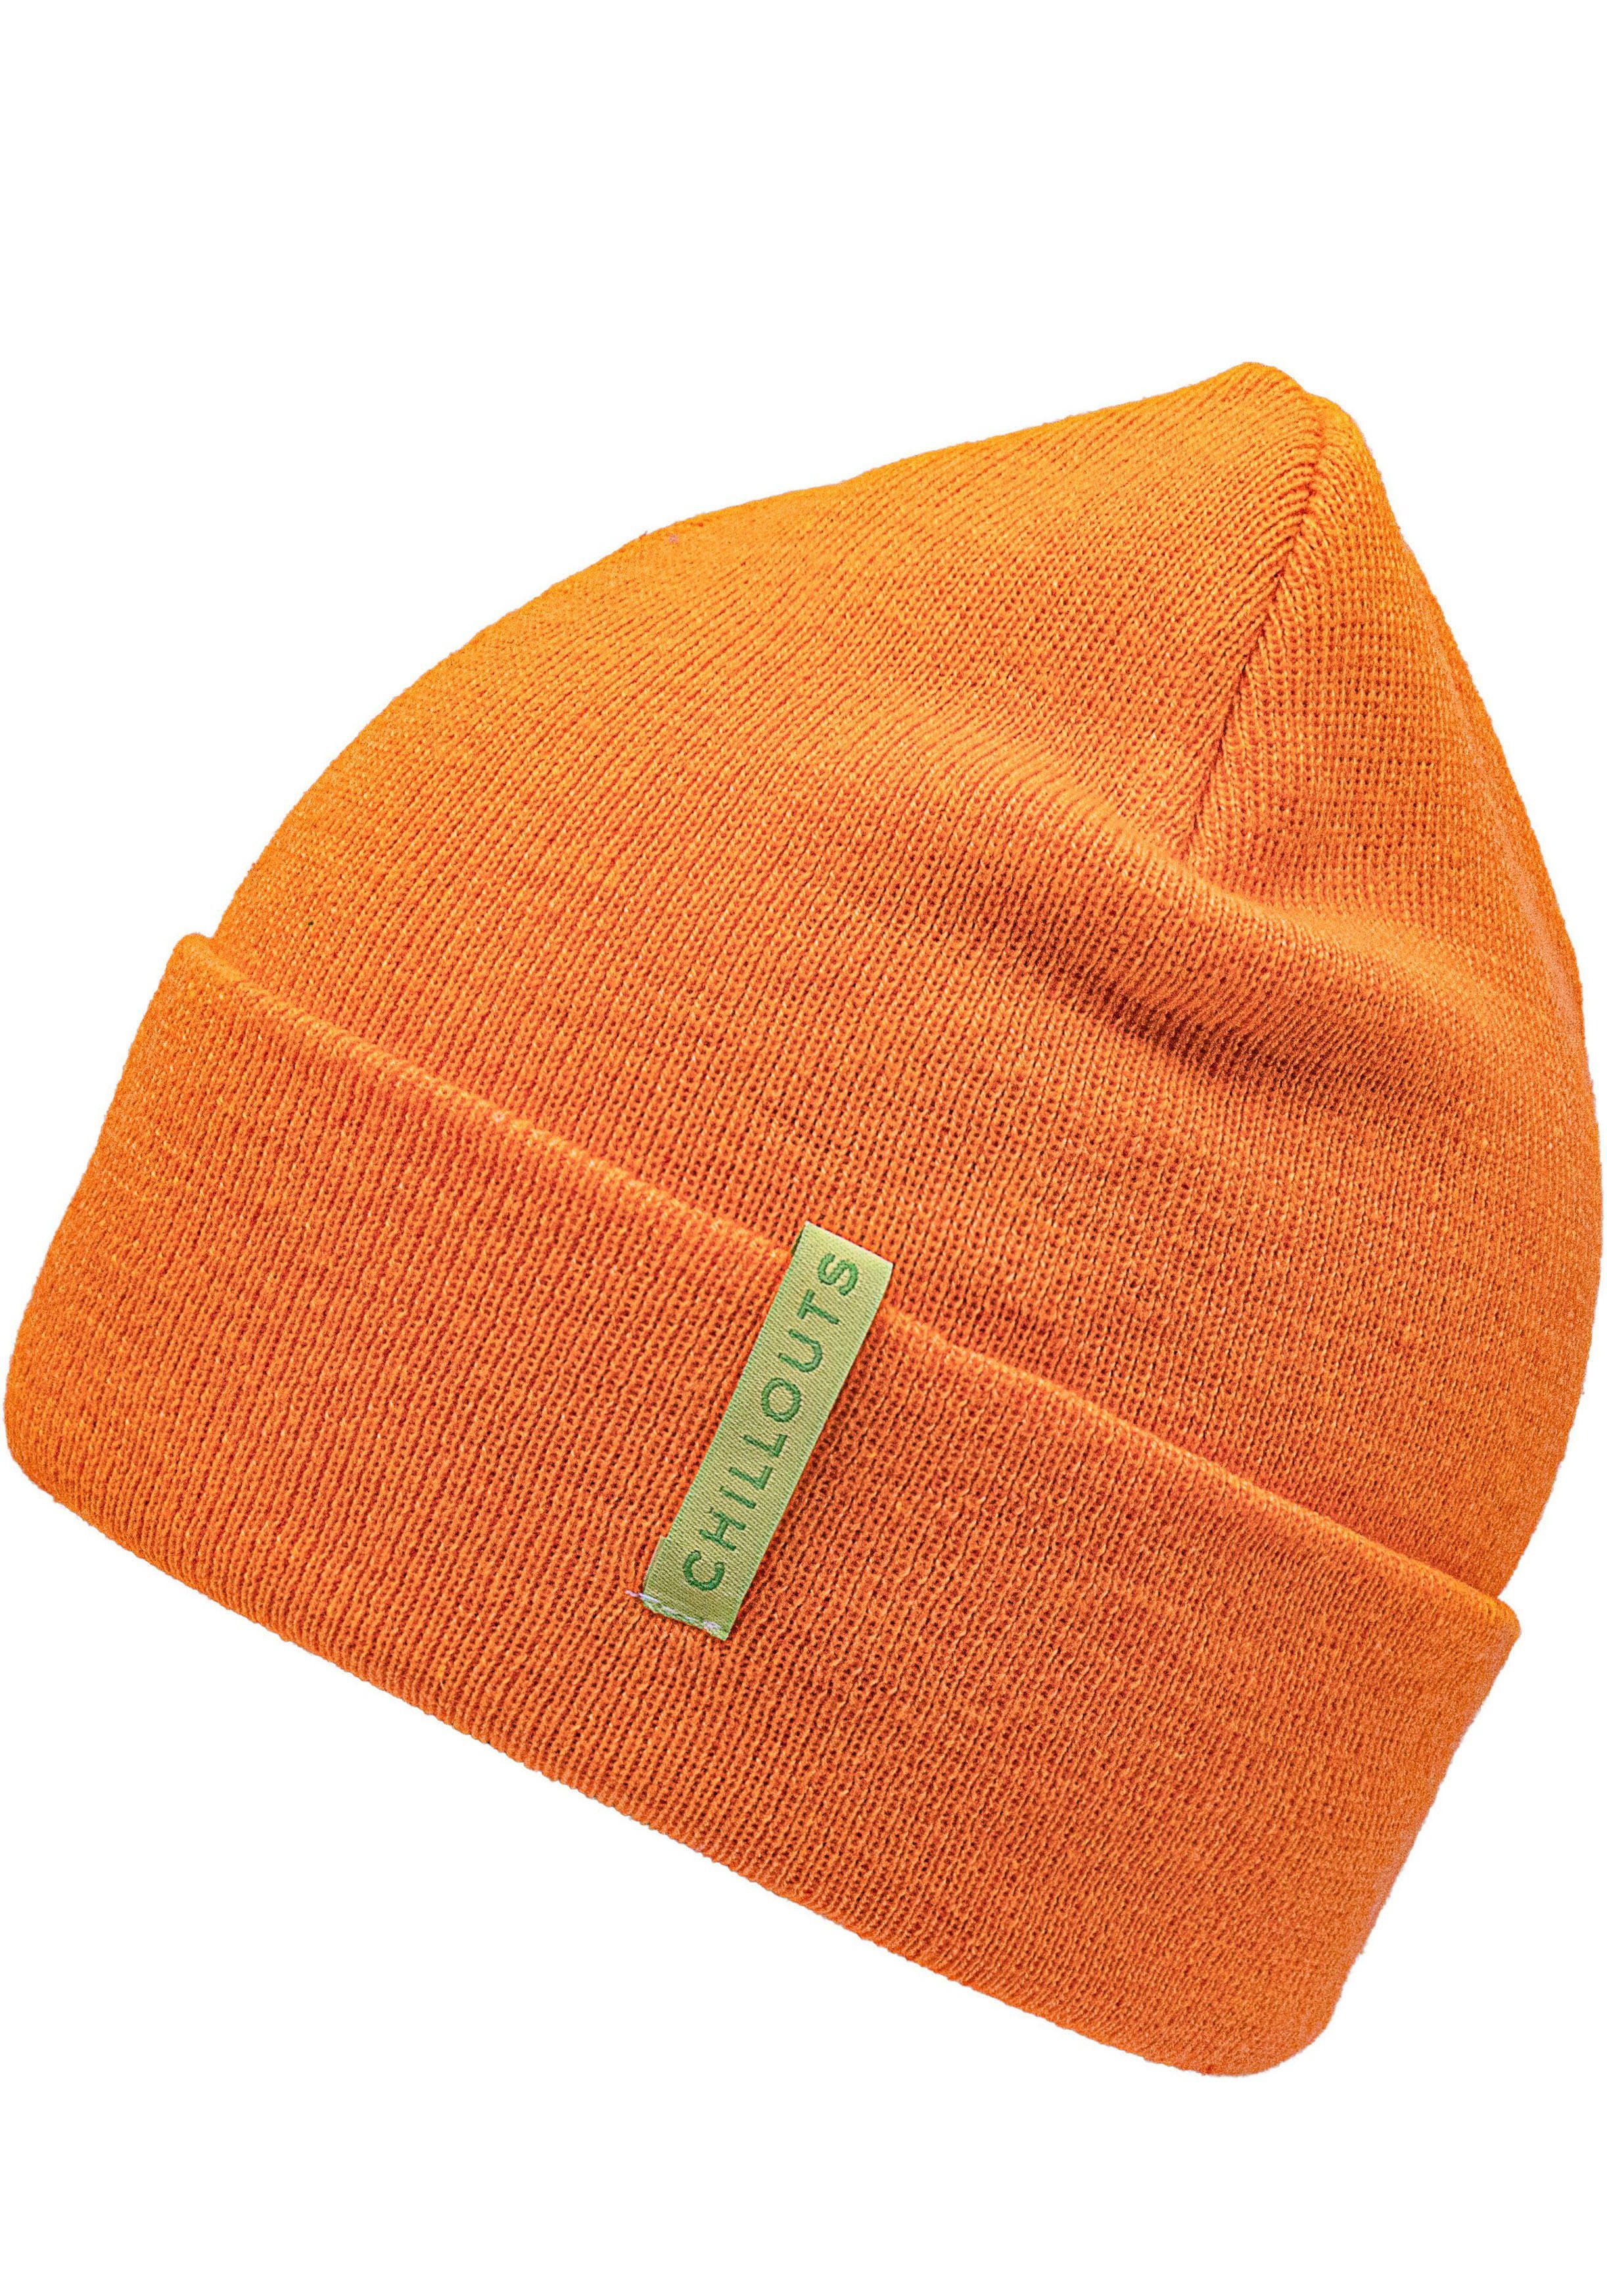 chillouts Strickmütze Monty Hat Mit breitem Umschlag orange | Strickmützen